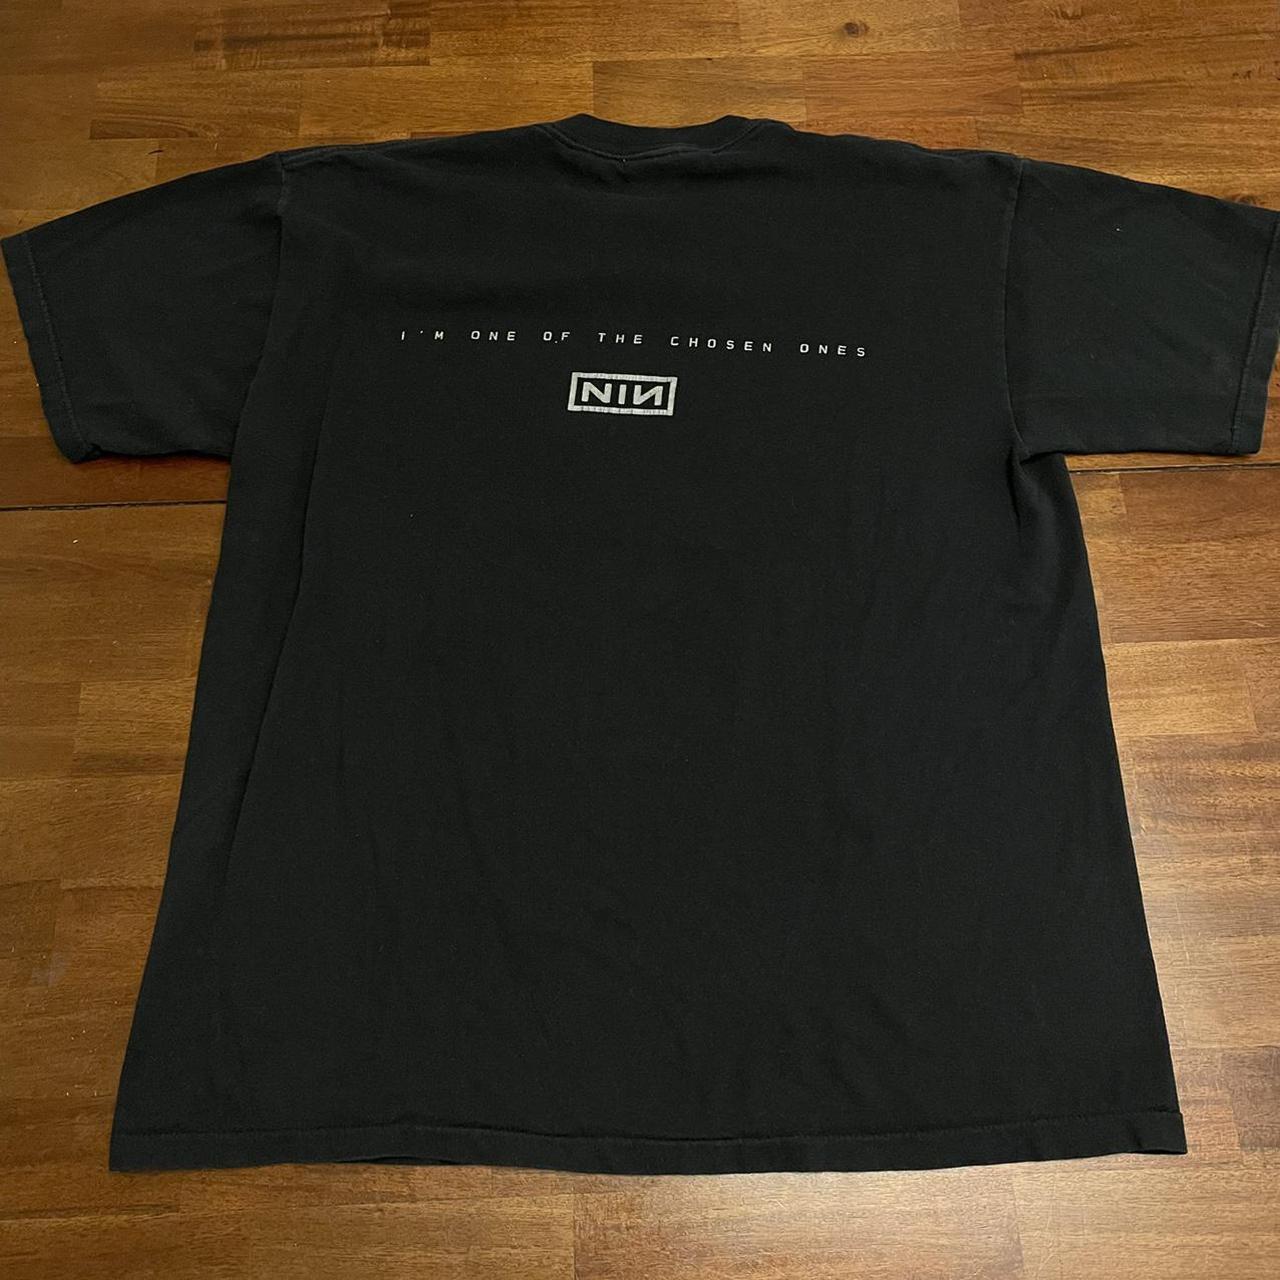 Vintage Nine Inch Nails Shirt, size XL, in excellent... - Depop